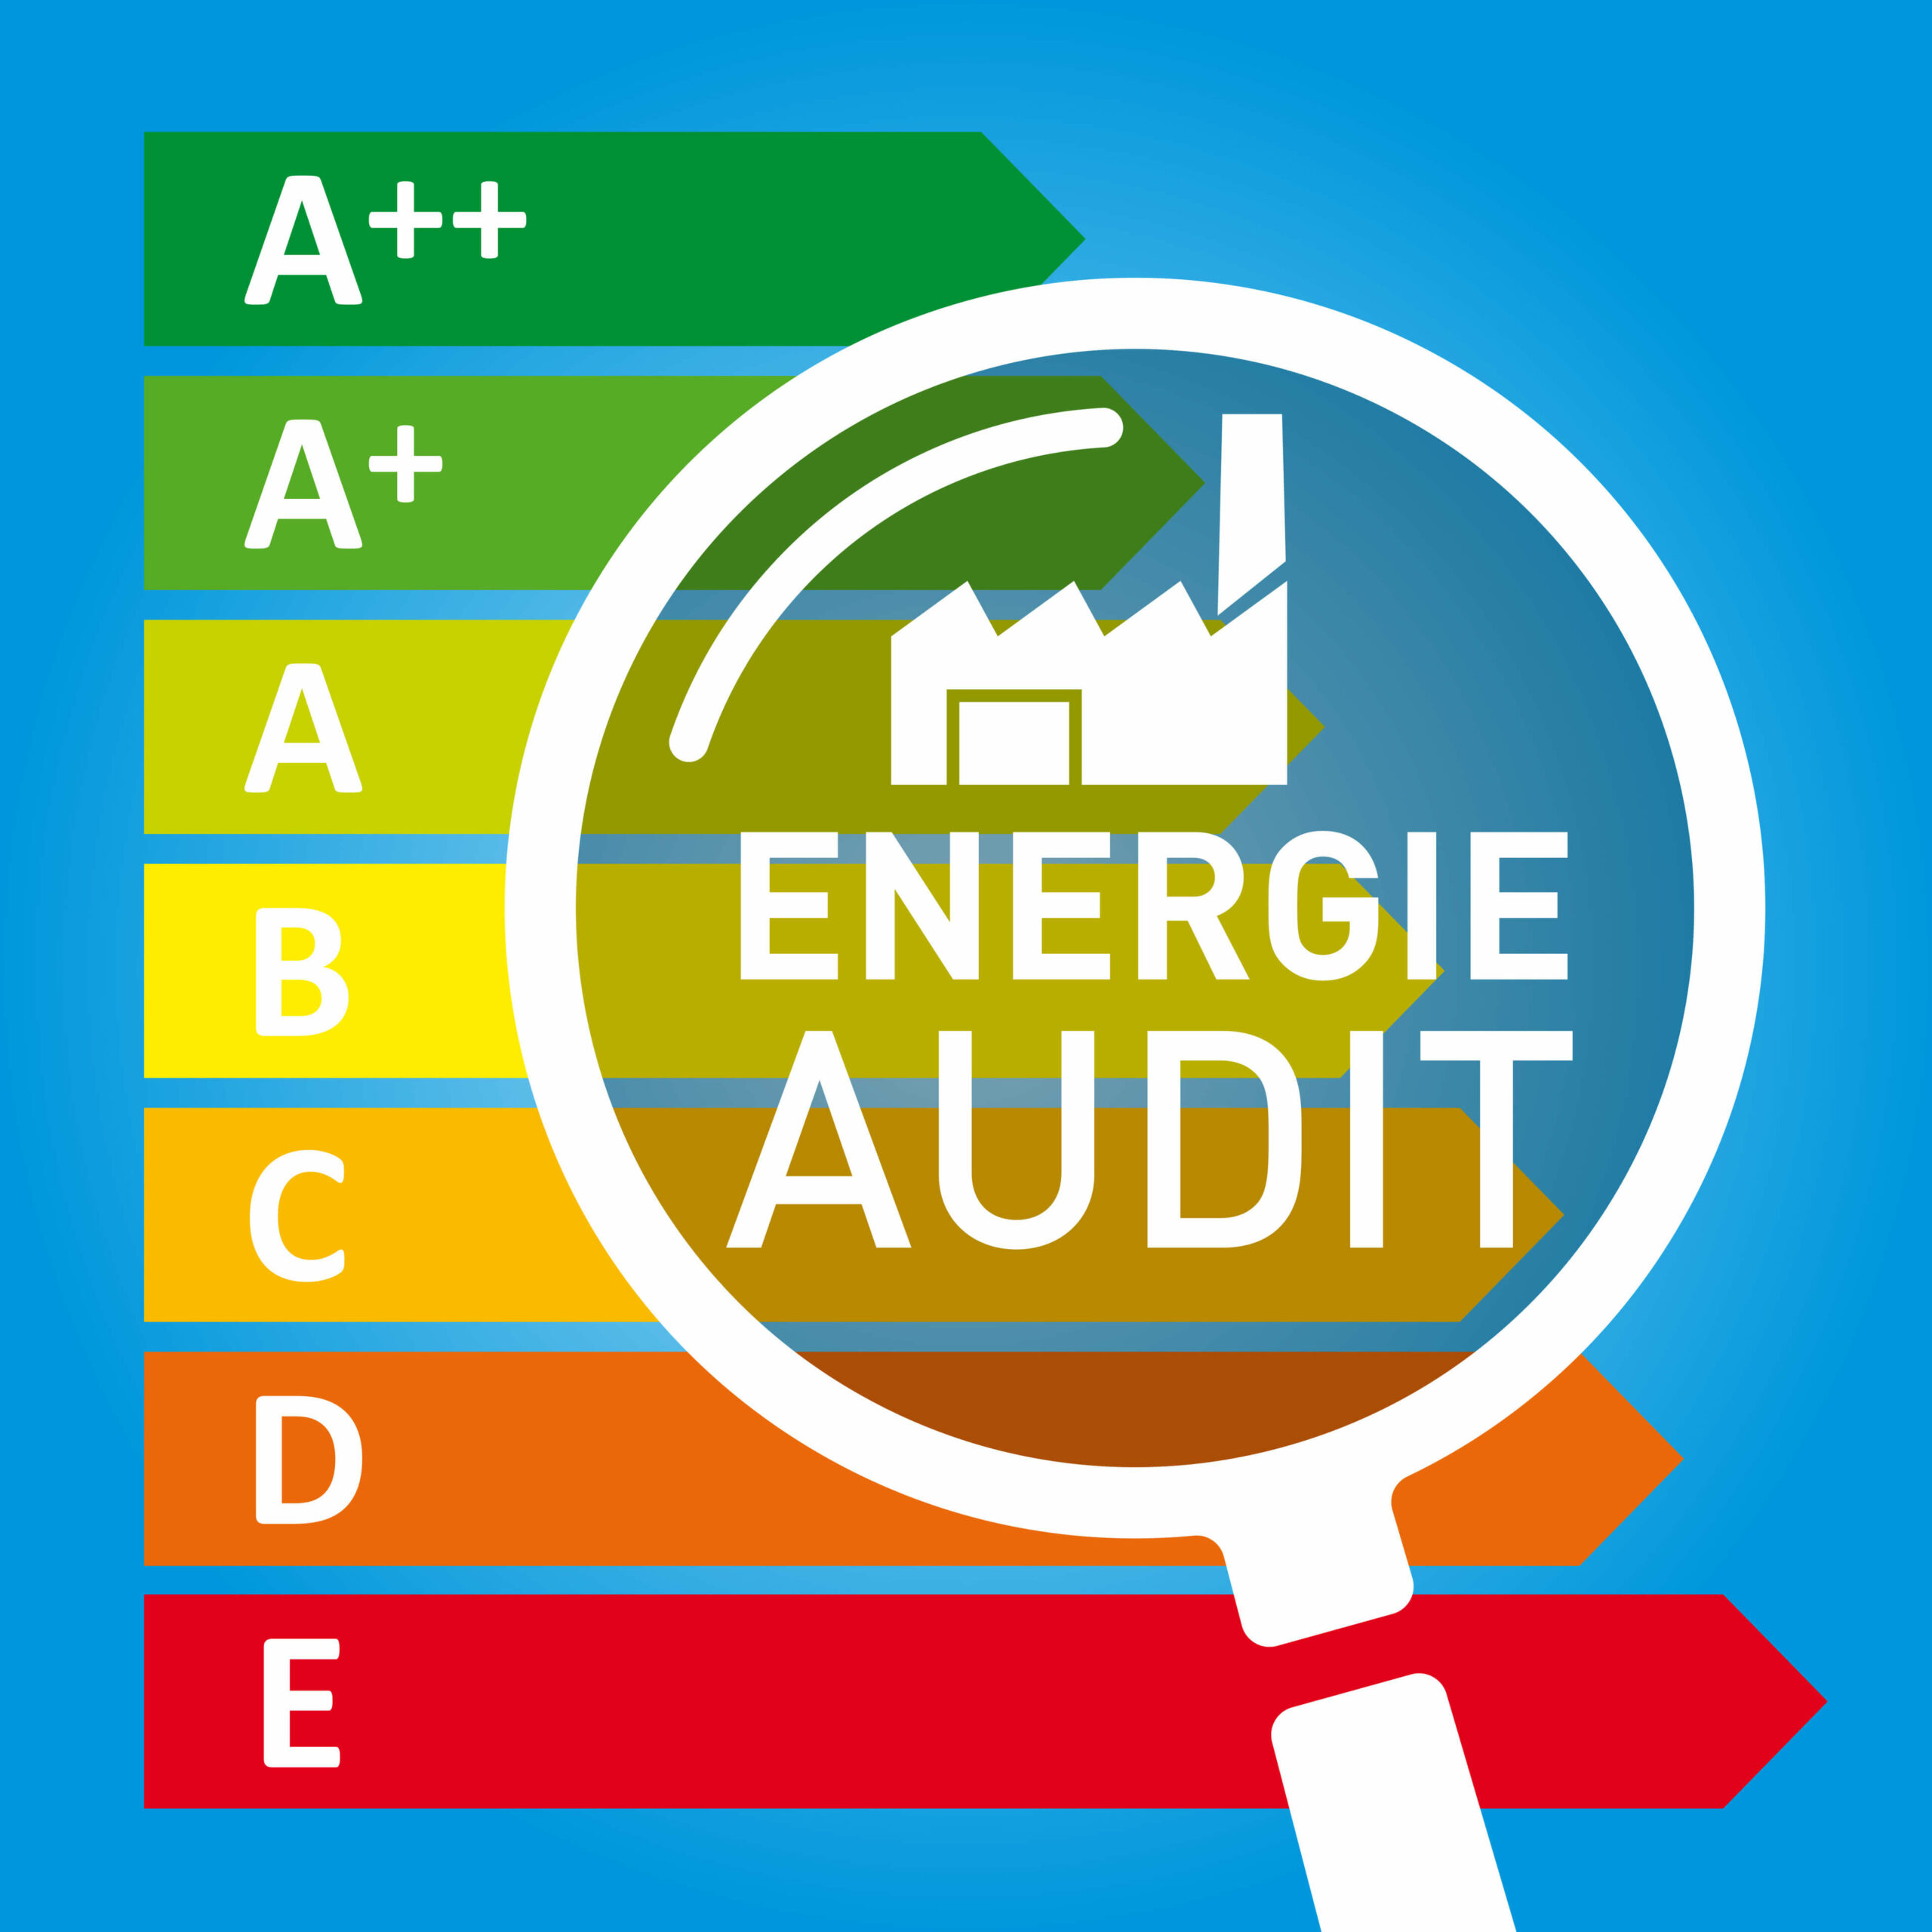 cout audit energetique copropriete